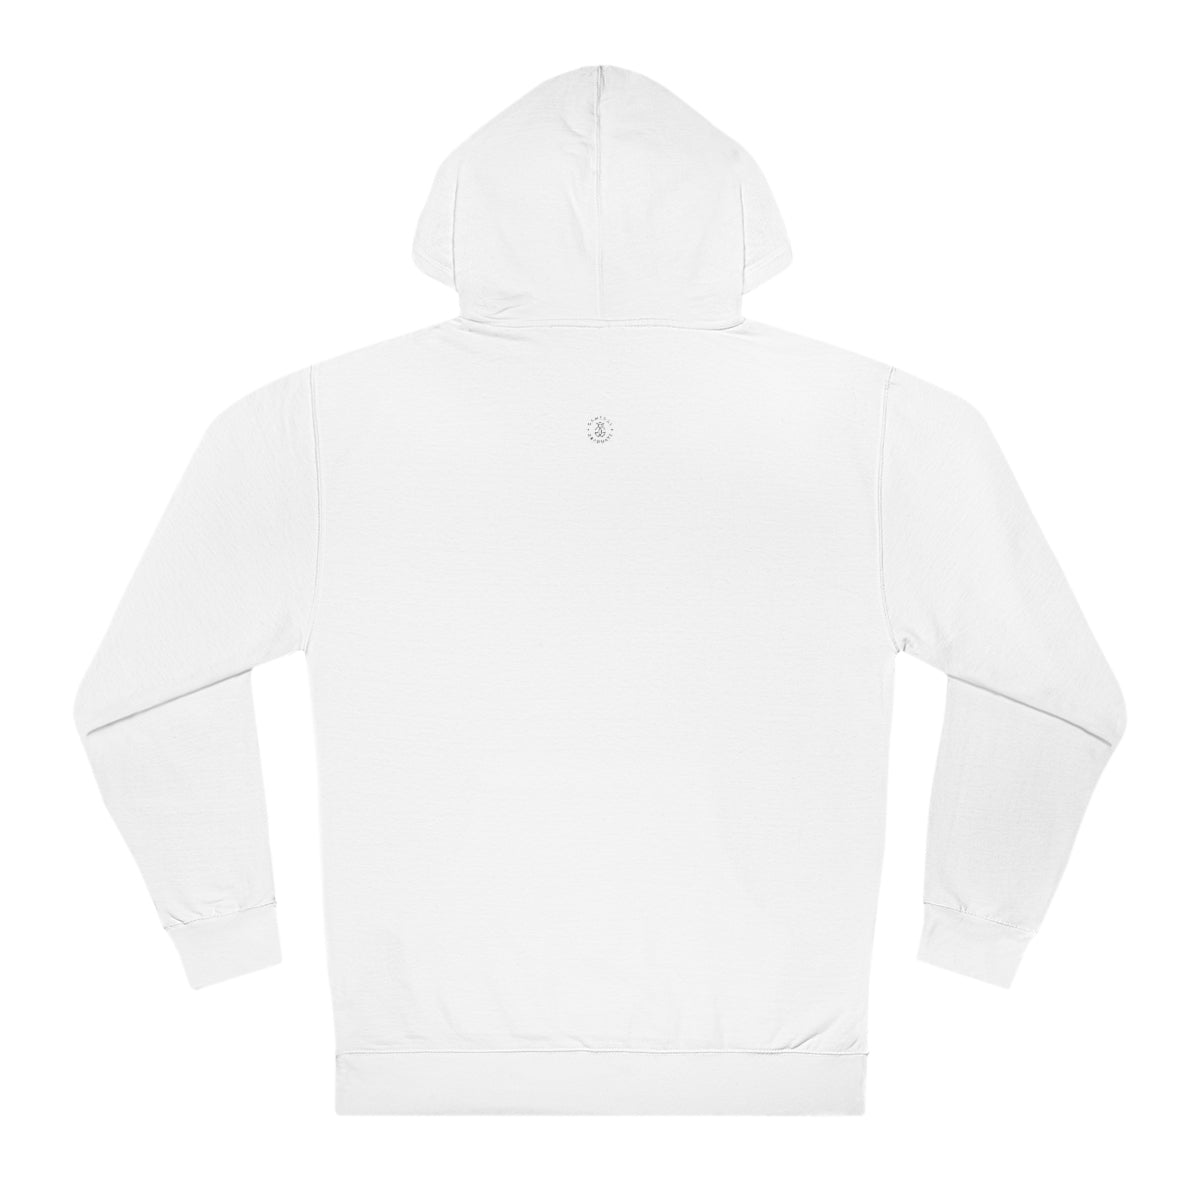 Tulane Hooded Sweatshirt - GG - ITC